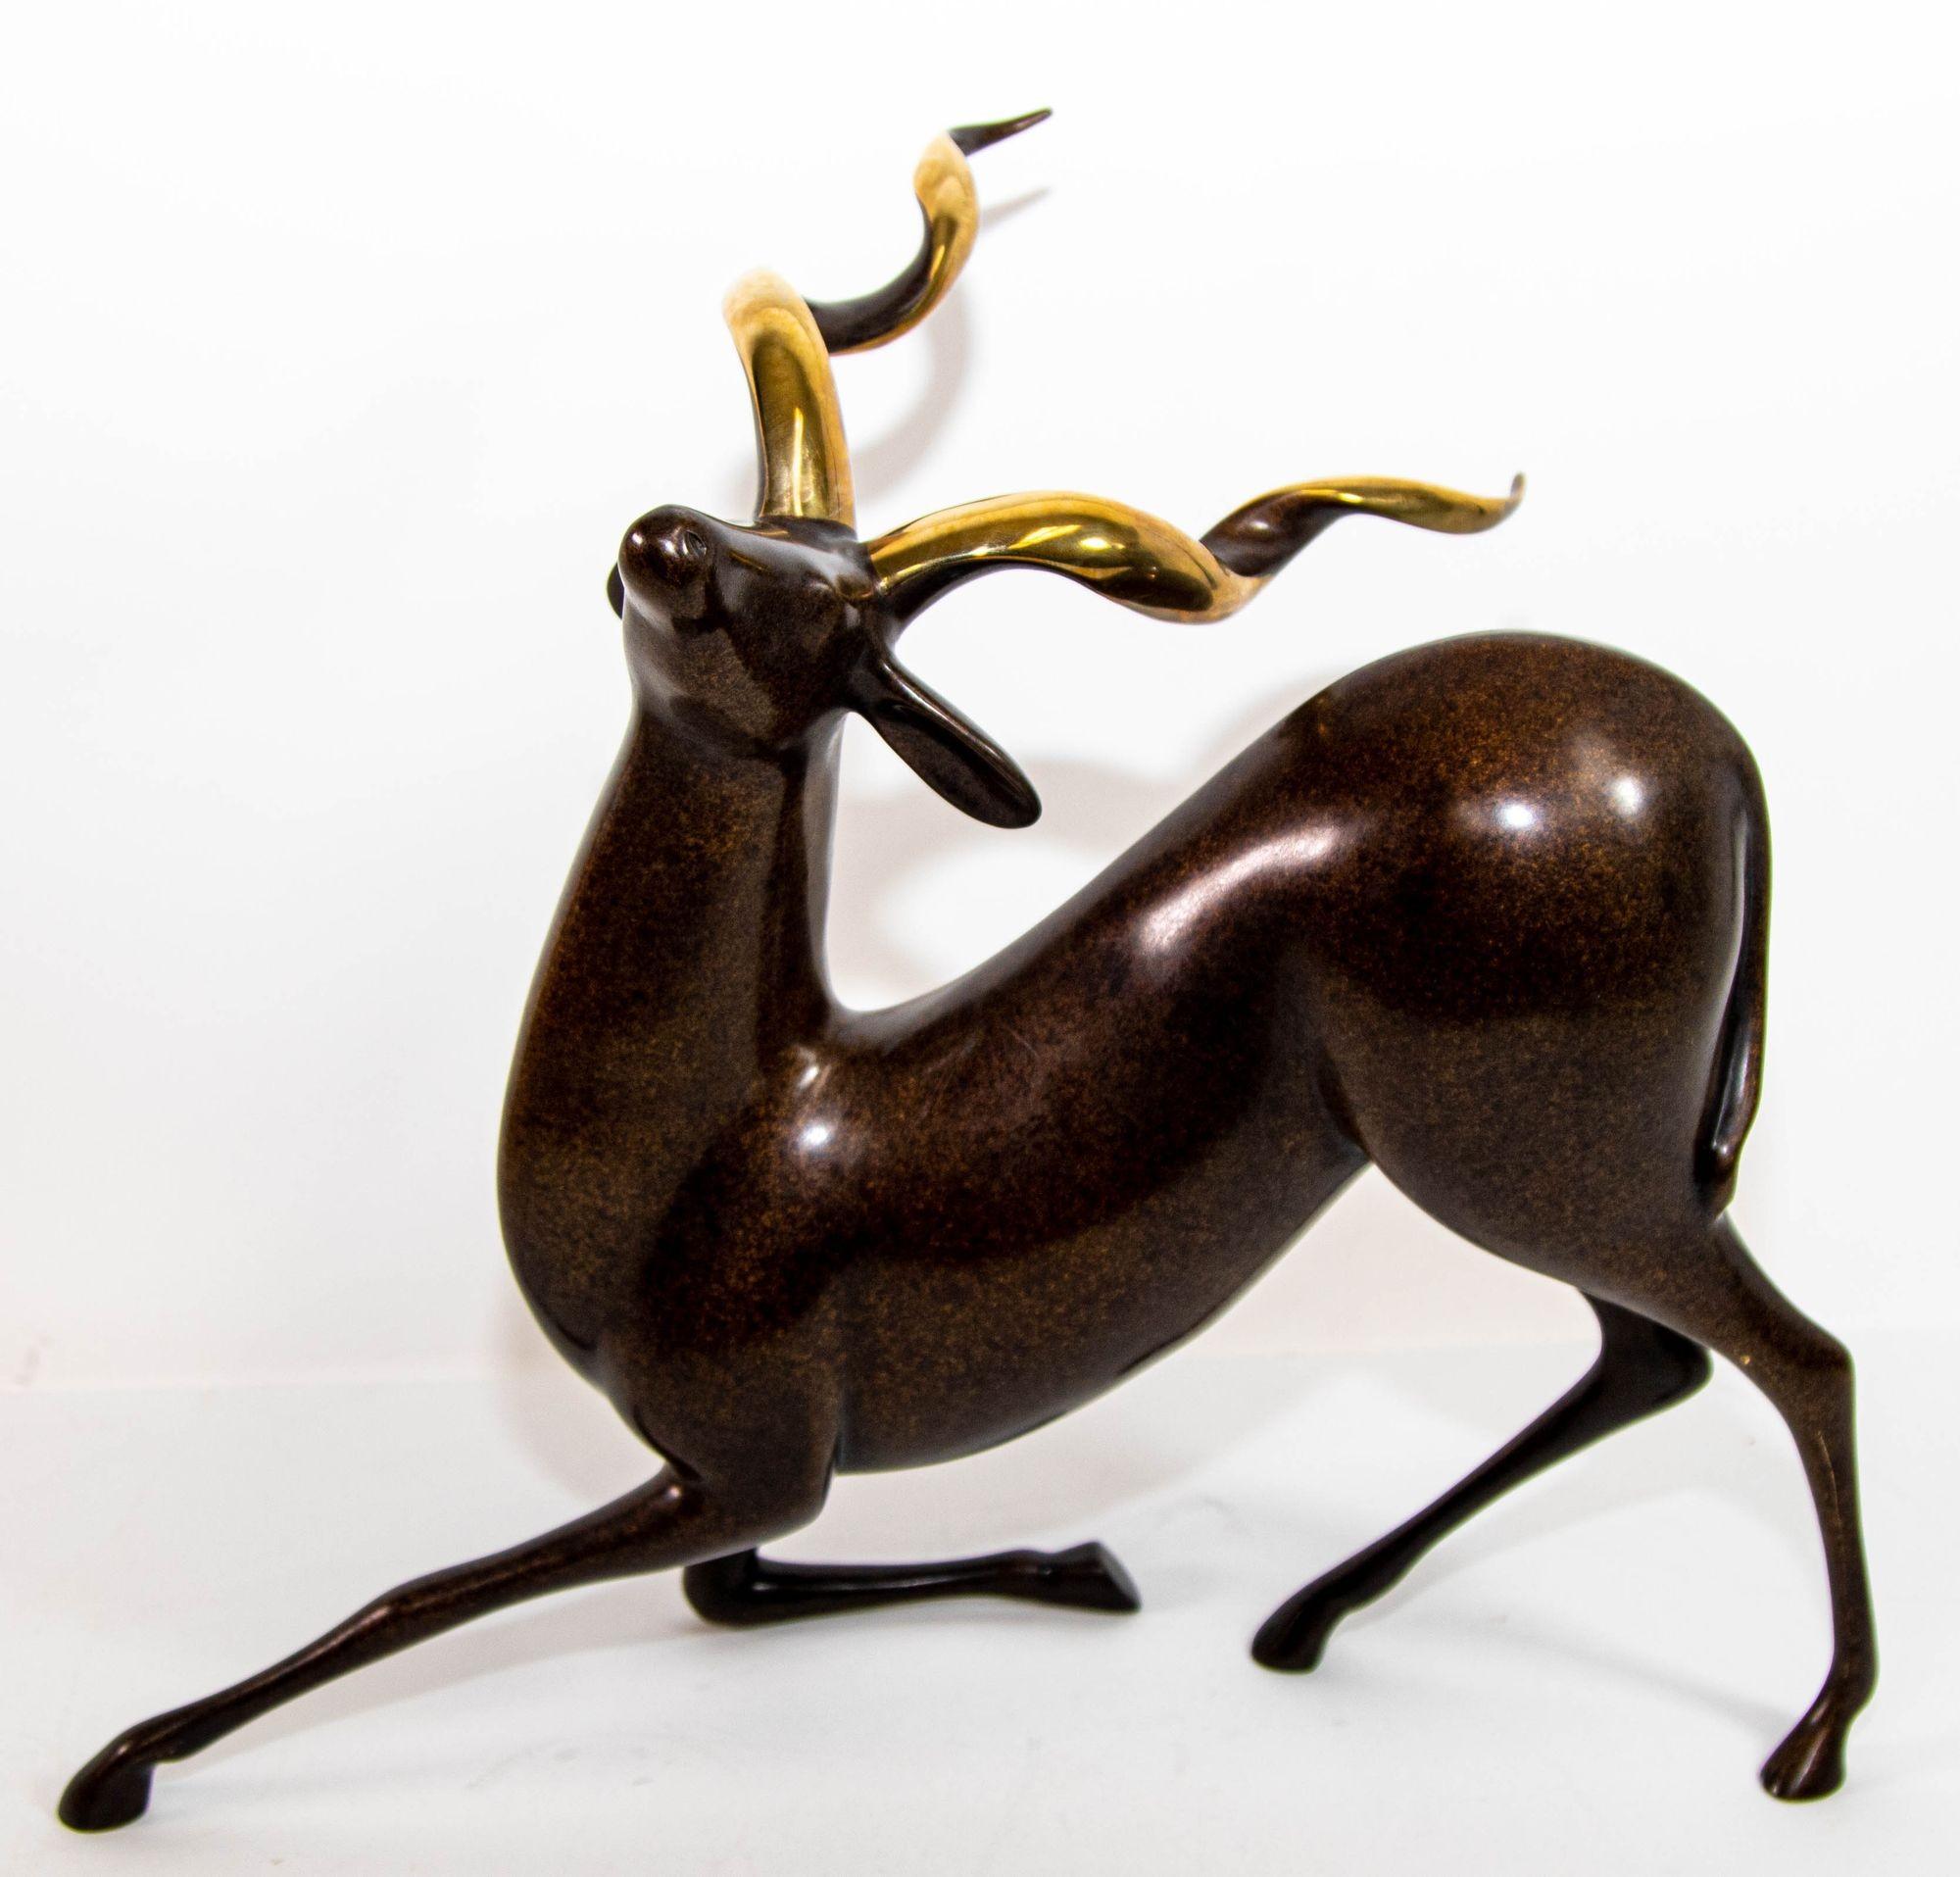 Sculpture originale de Loet Vanderveen en bronze, édition limitée, sculpture de Kudu, bronze foncé 2 tons avec corne dorée.
Exceptionnelle figurine stylisée d'antilope koudou à longues cornes en bronze patiné foncé.
Frappant beau grand bronze kudu